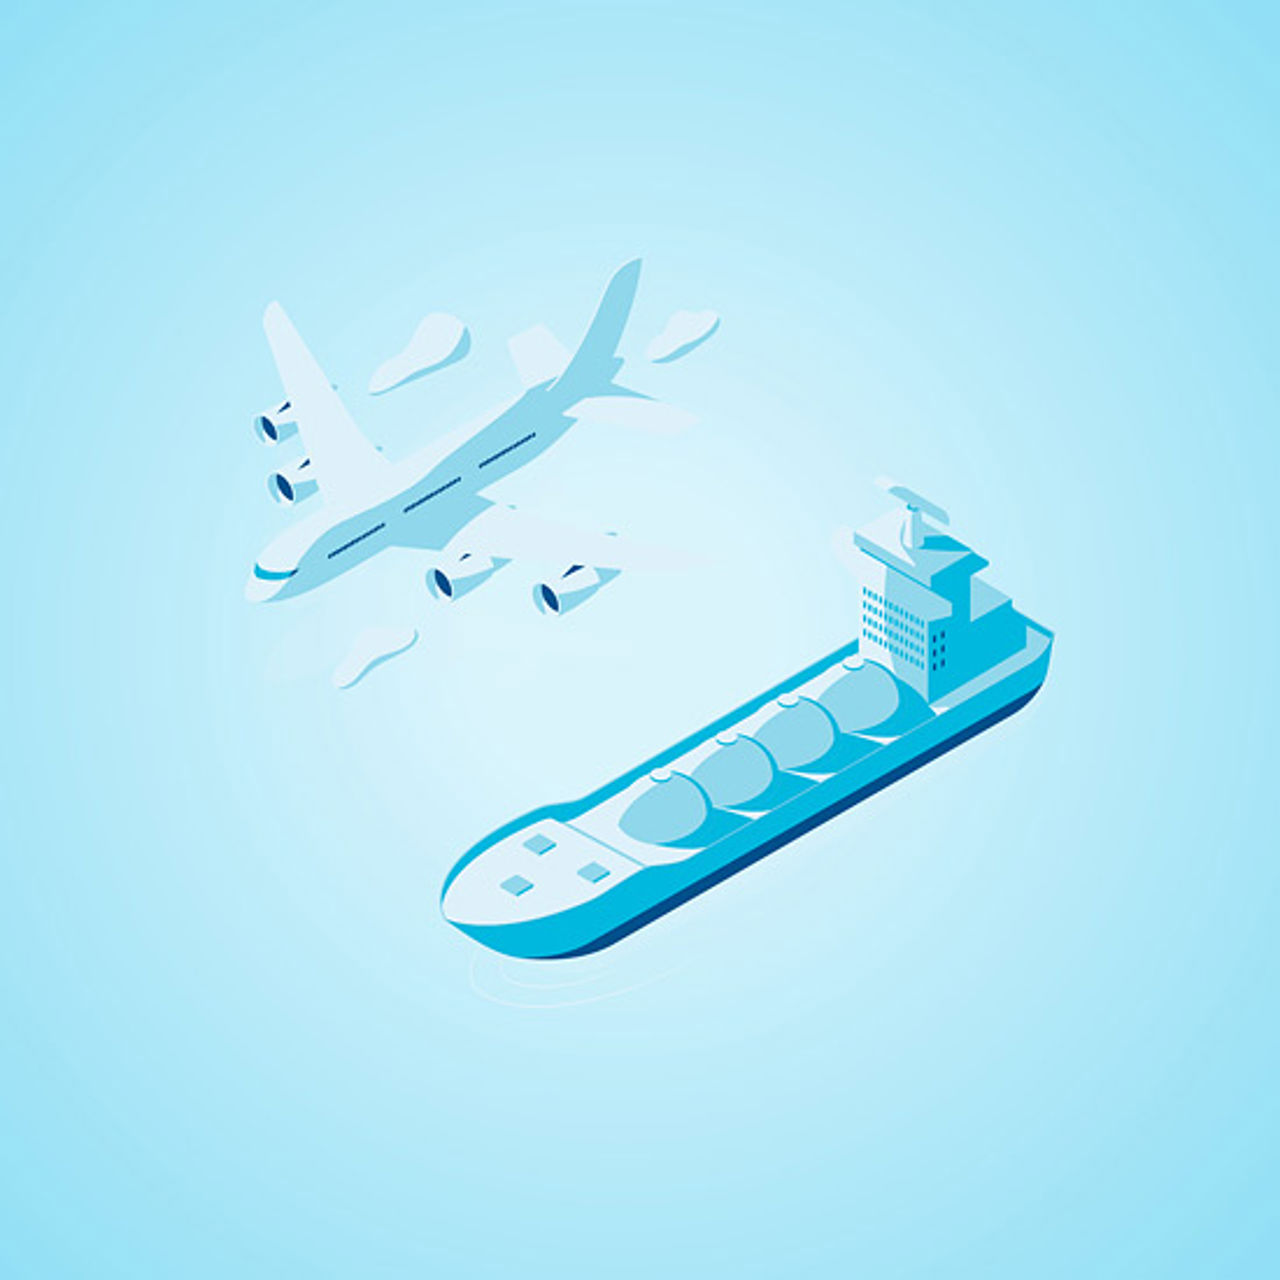 Abbildung von einem Schiff und einem Flugzeug